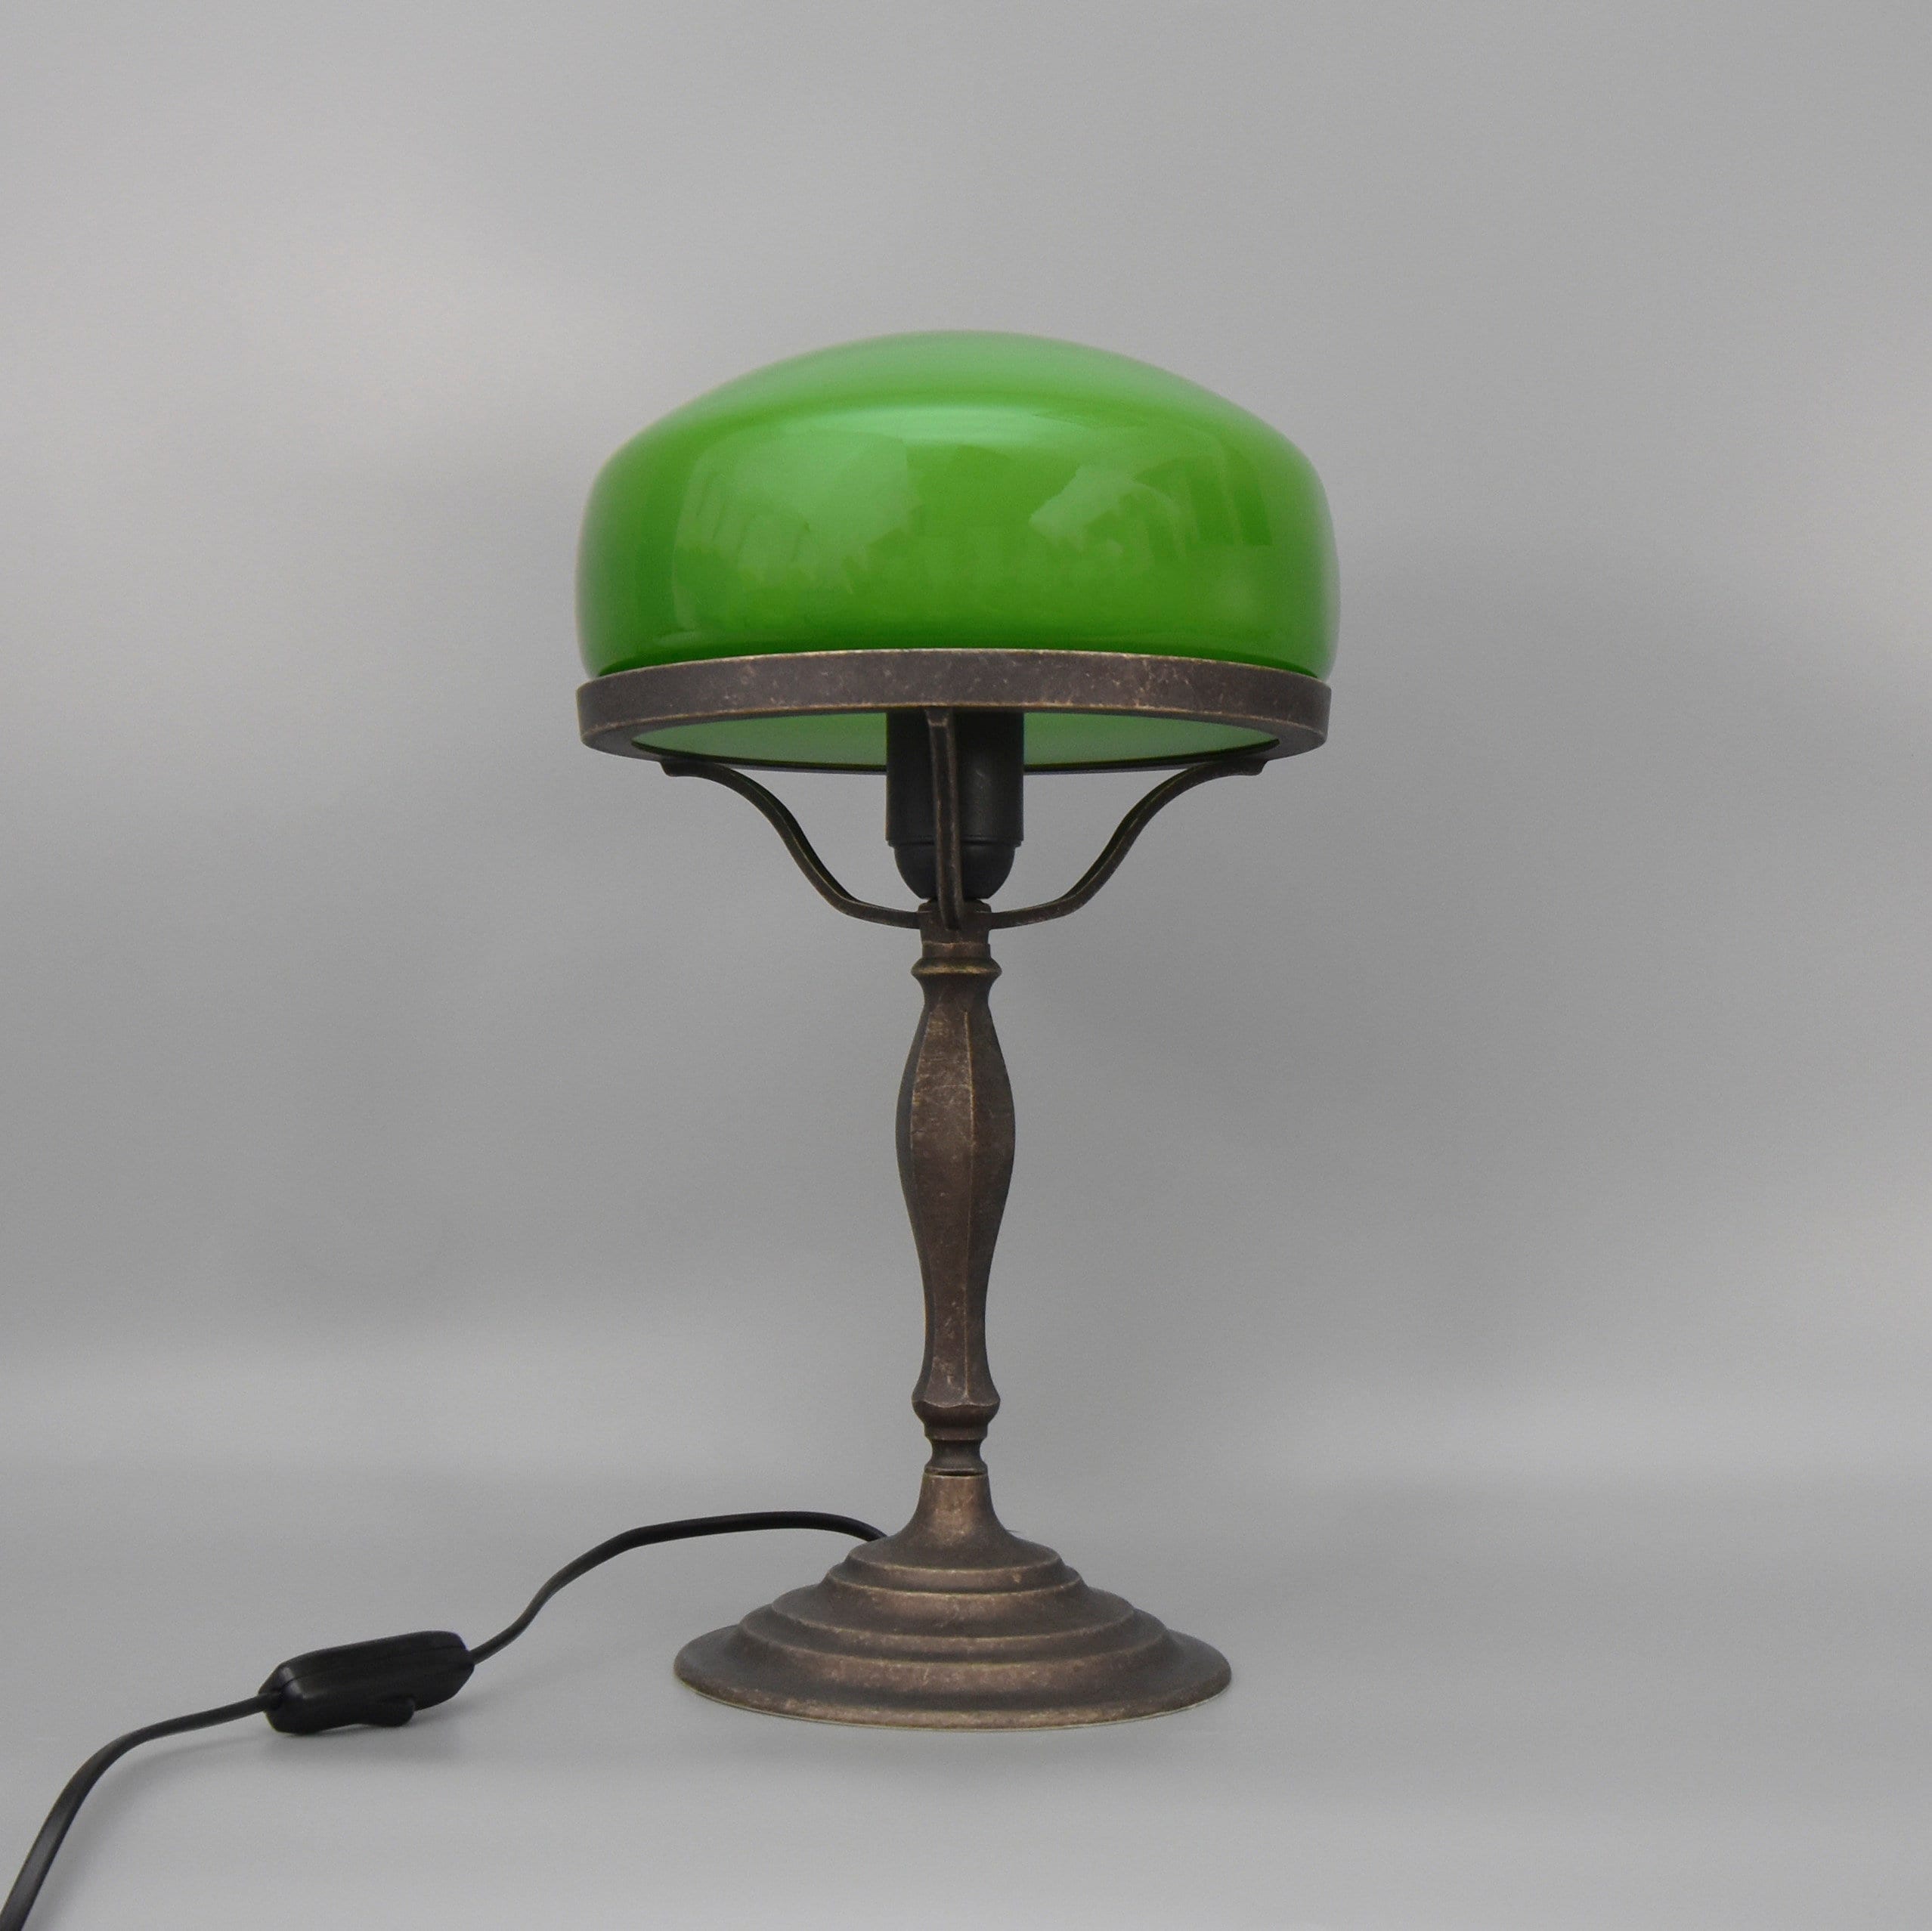 Lampe de table des banquiers au style vintage et retro